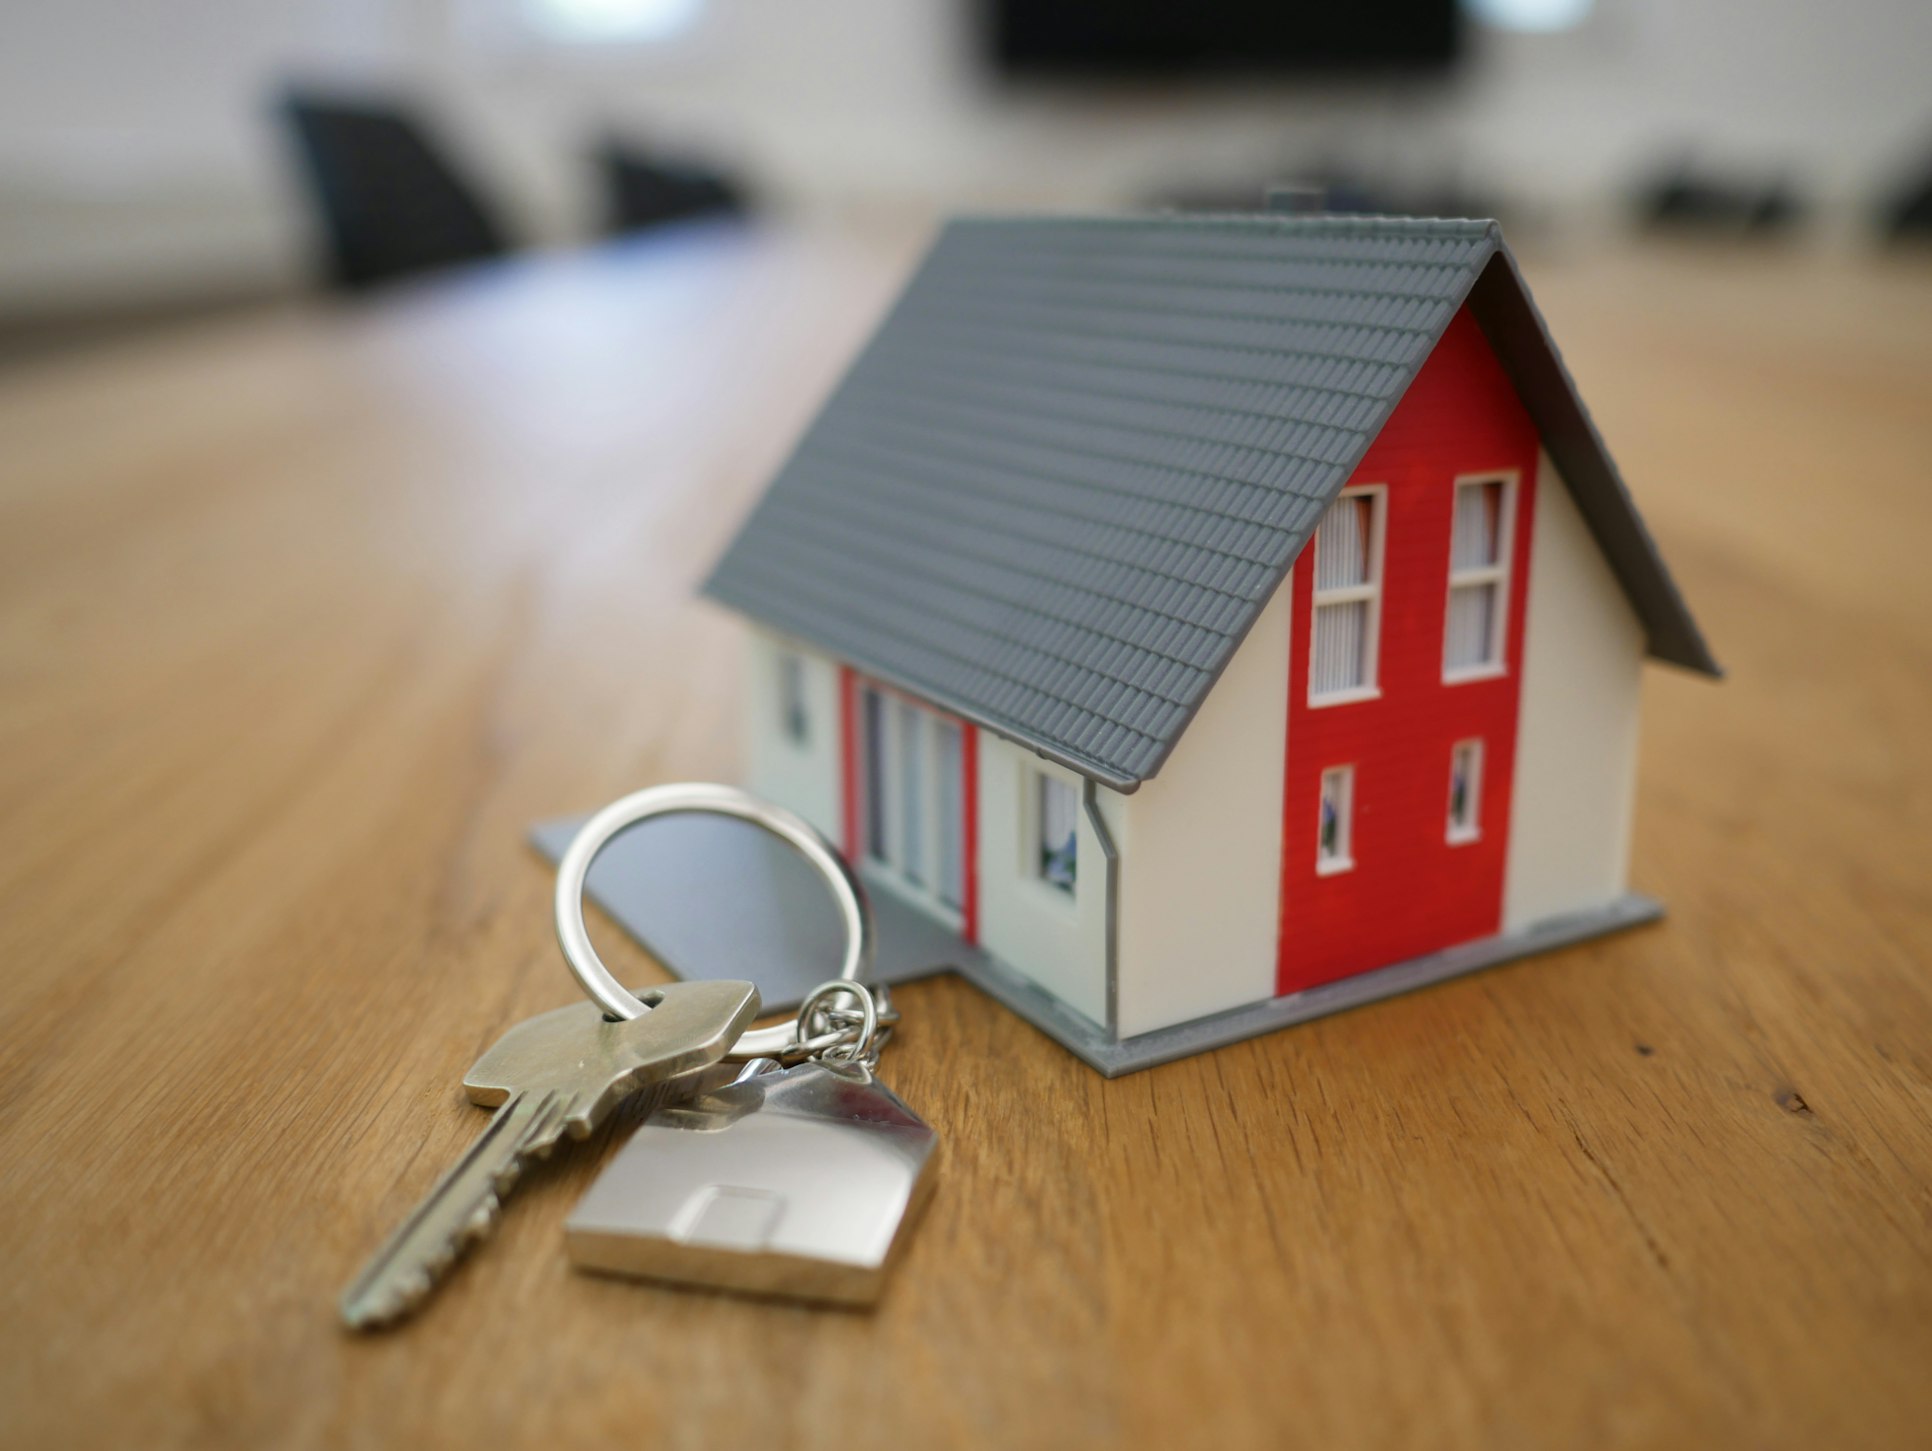 Miniature house figure with keys